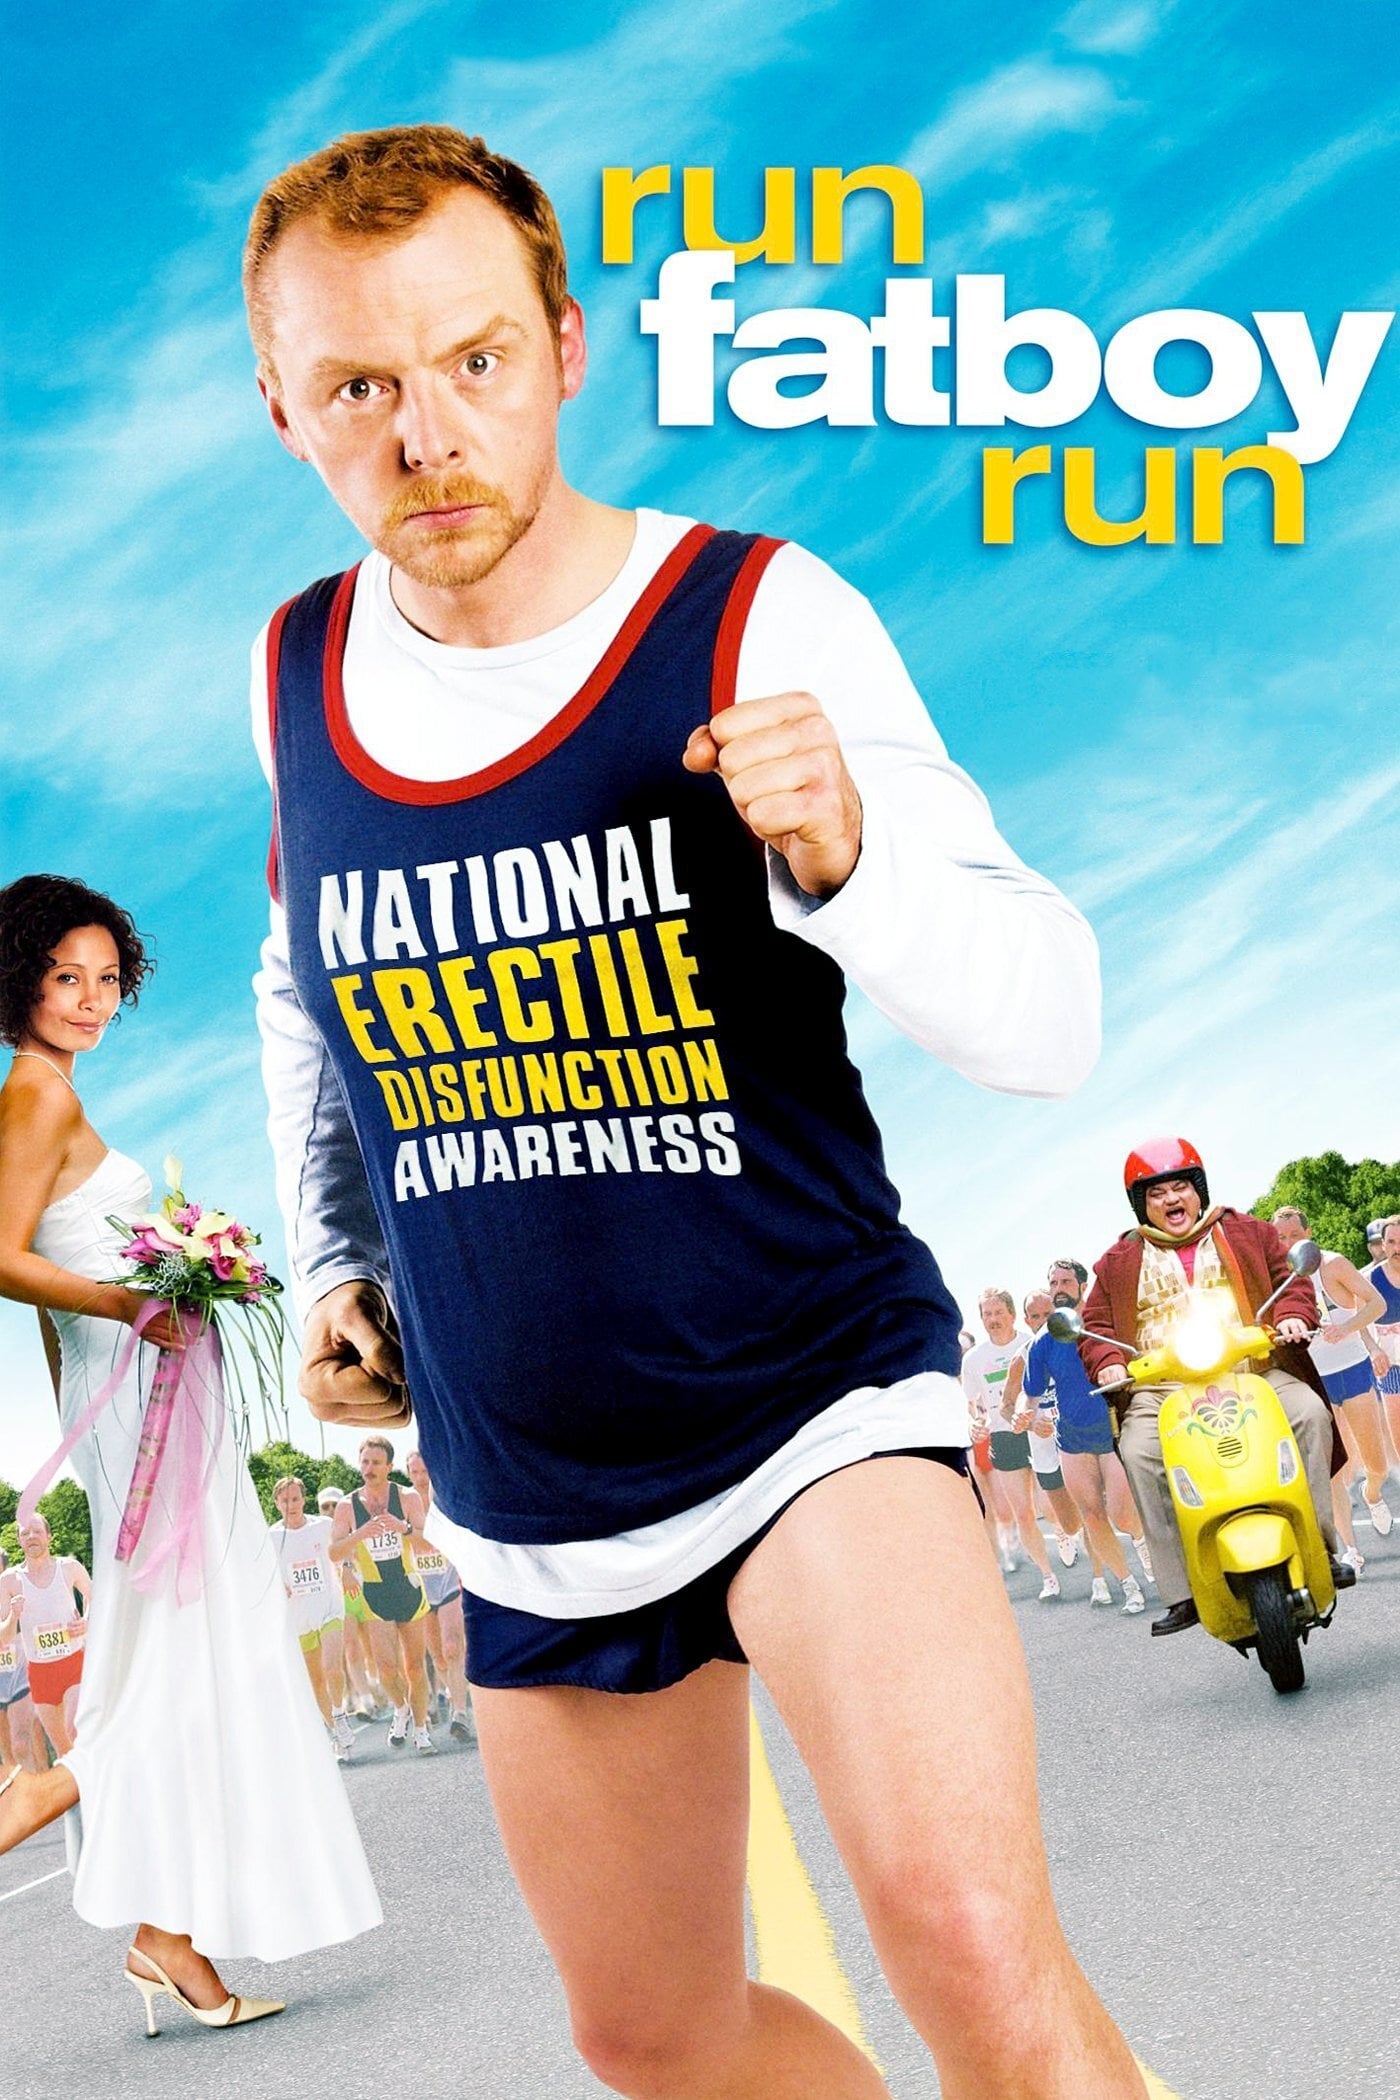 Run fatboy run [Sub-ITA] (2007)